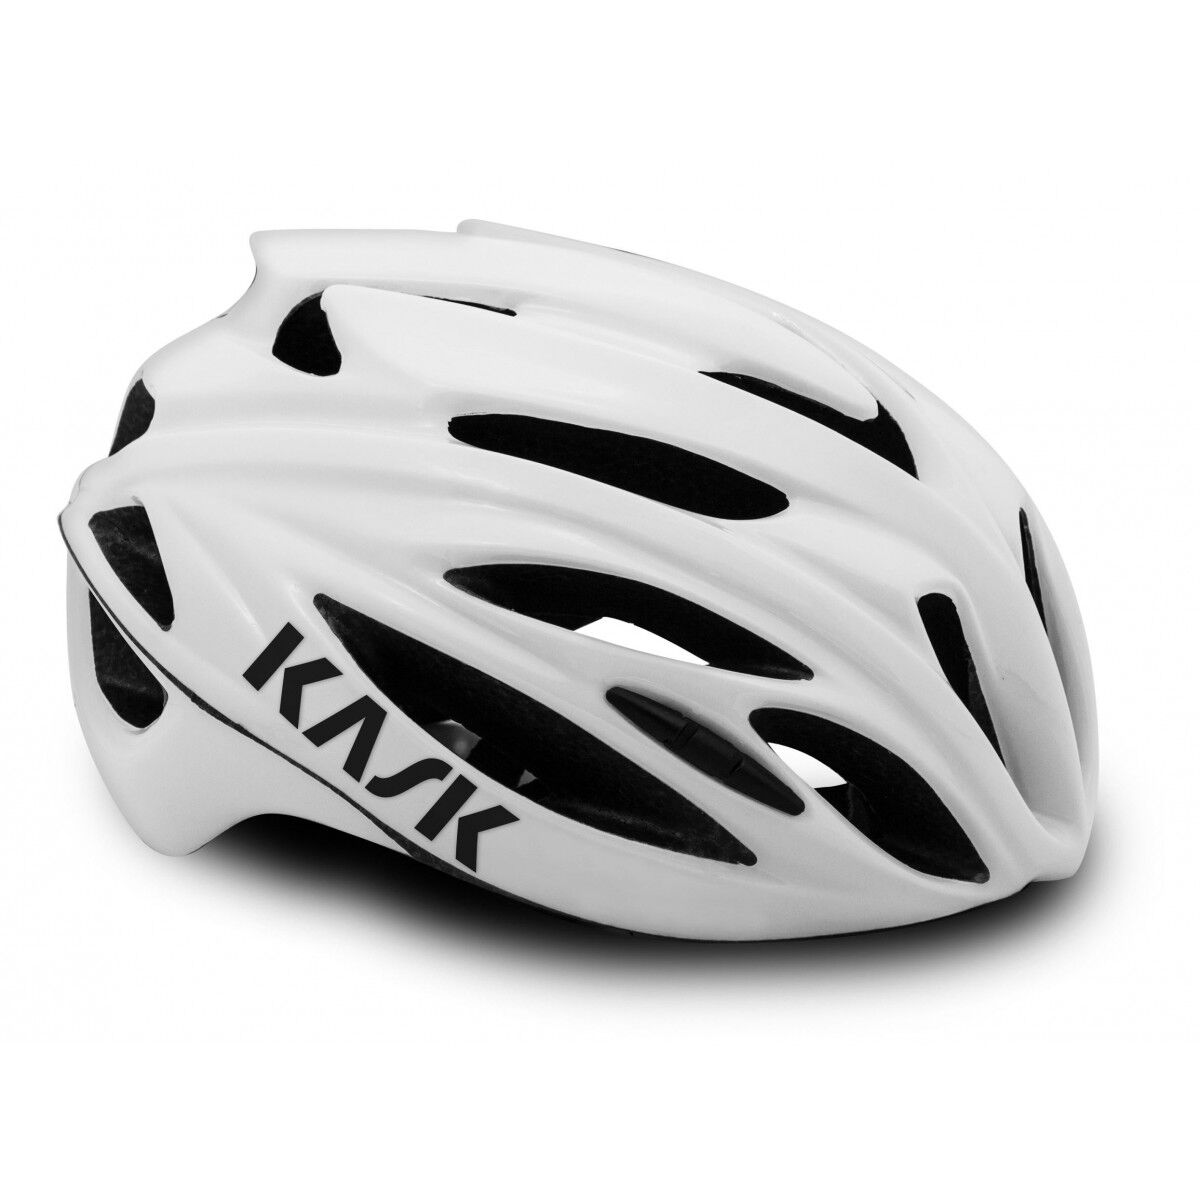 KASK Rapido 2021 - Road bike helmet